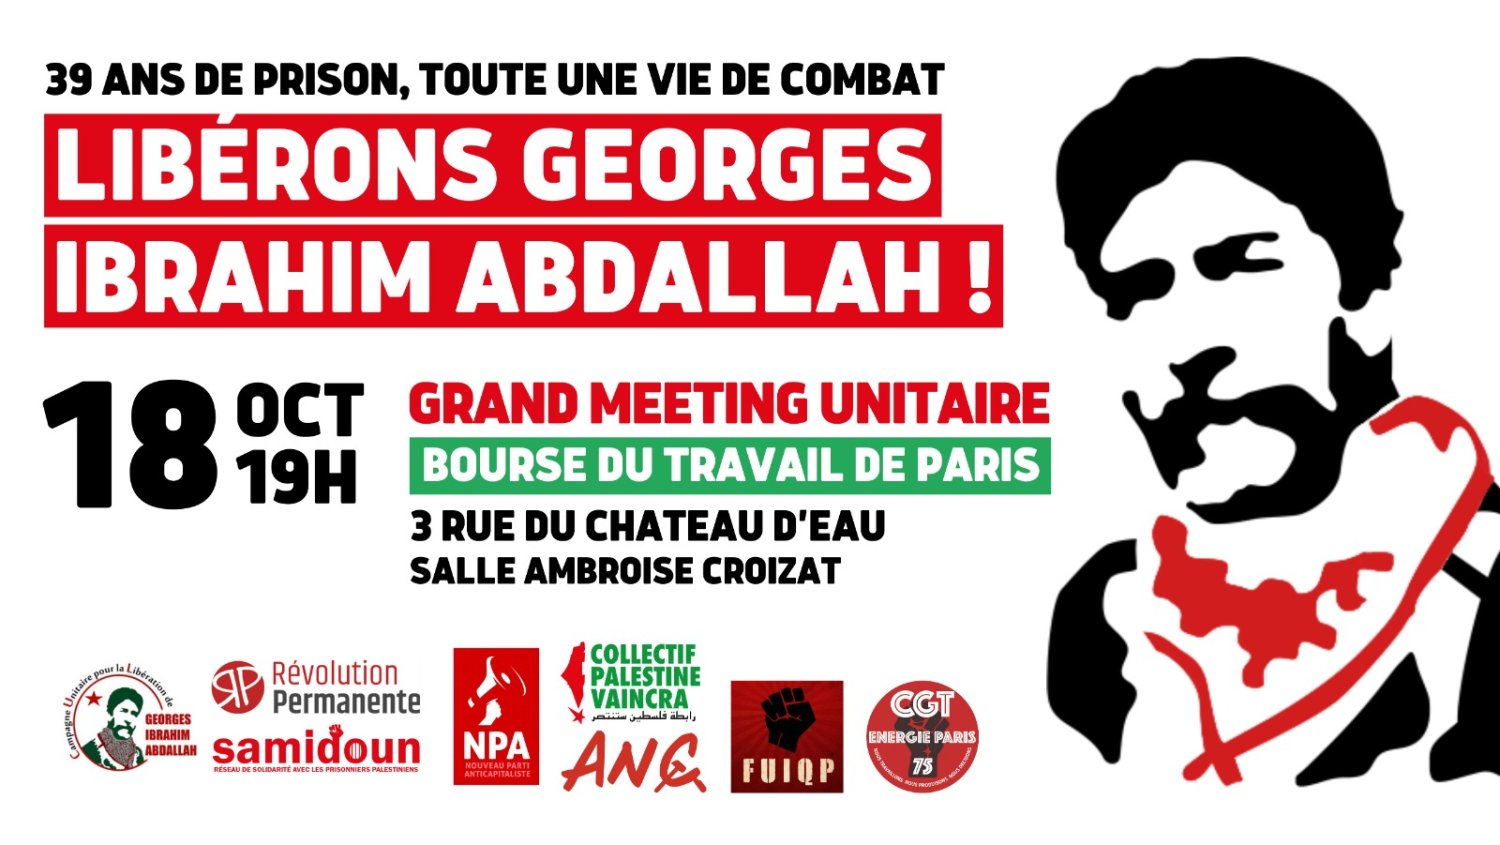 18 octobre : grand meeting unitaire pour la libération de Georges Abdallah à Paris !